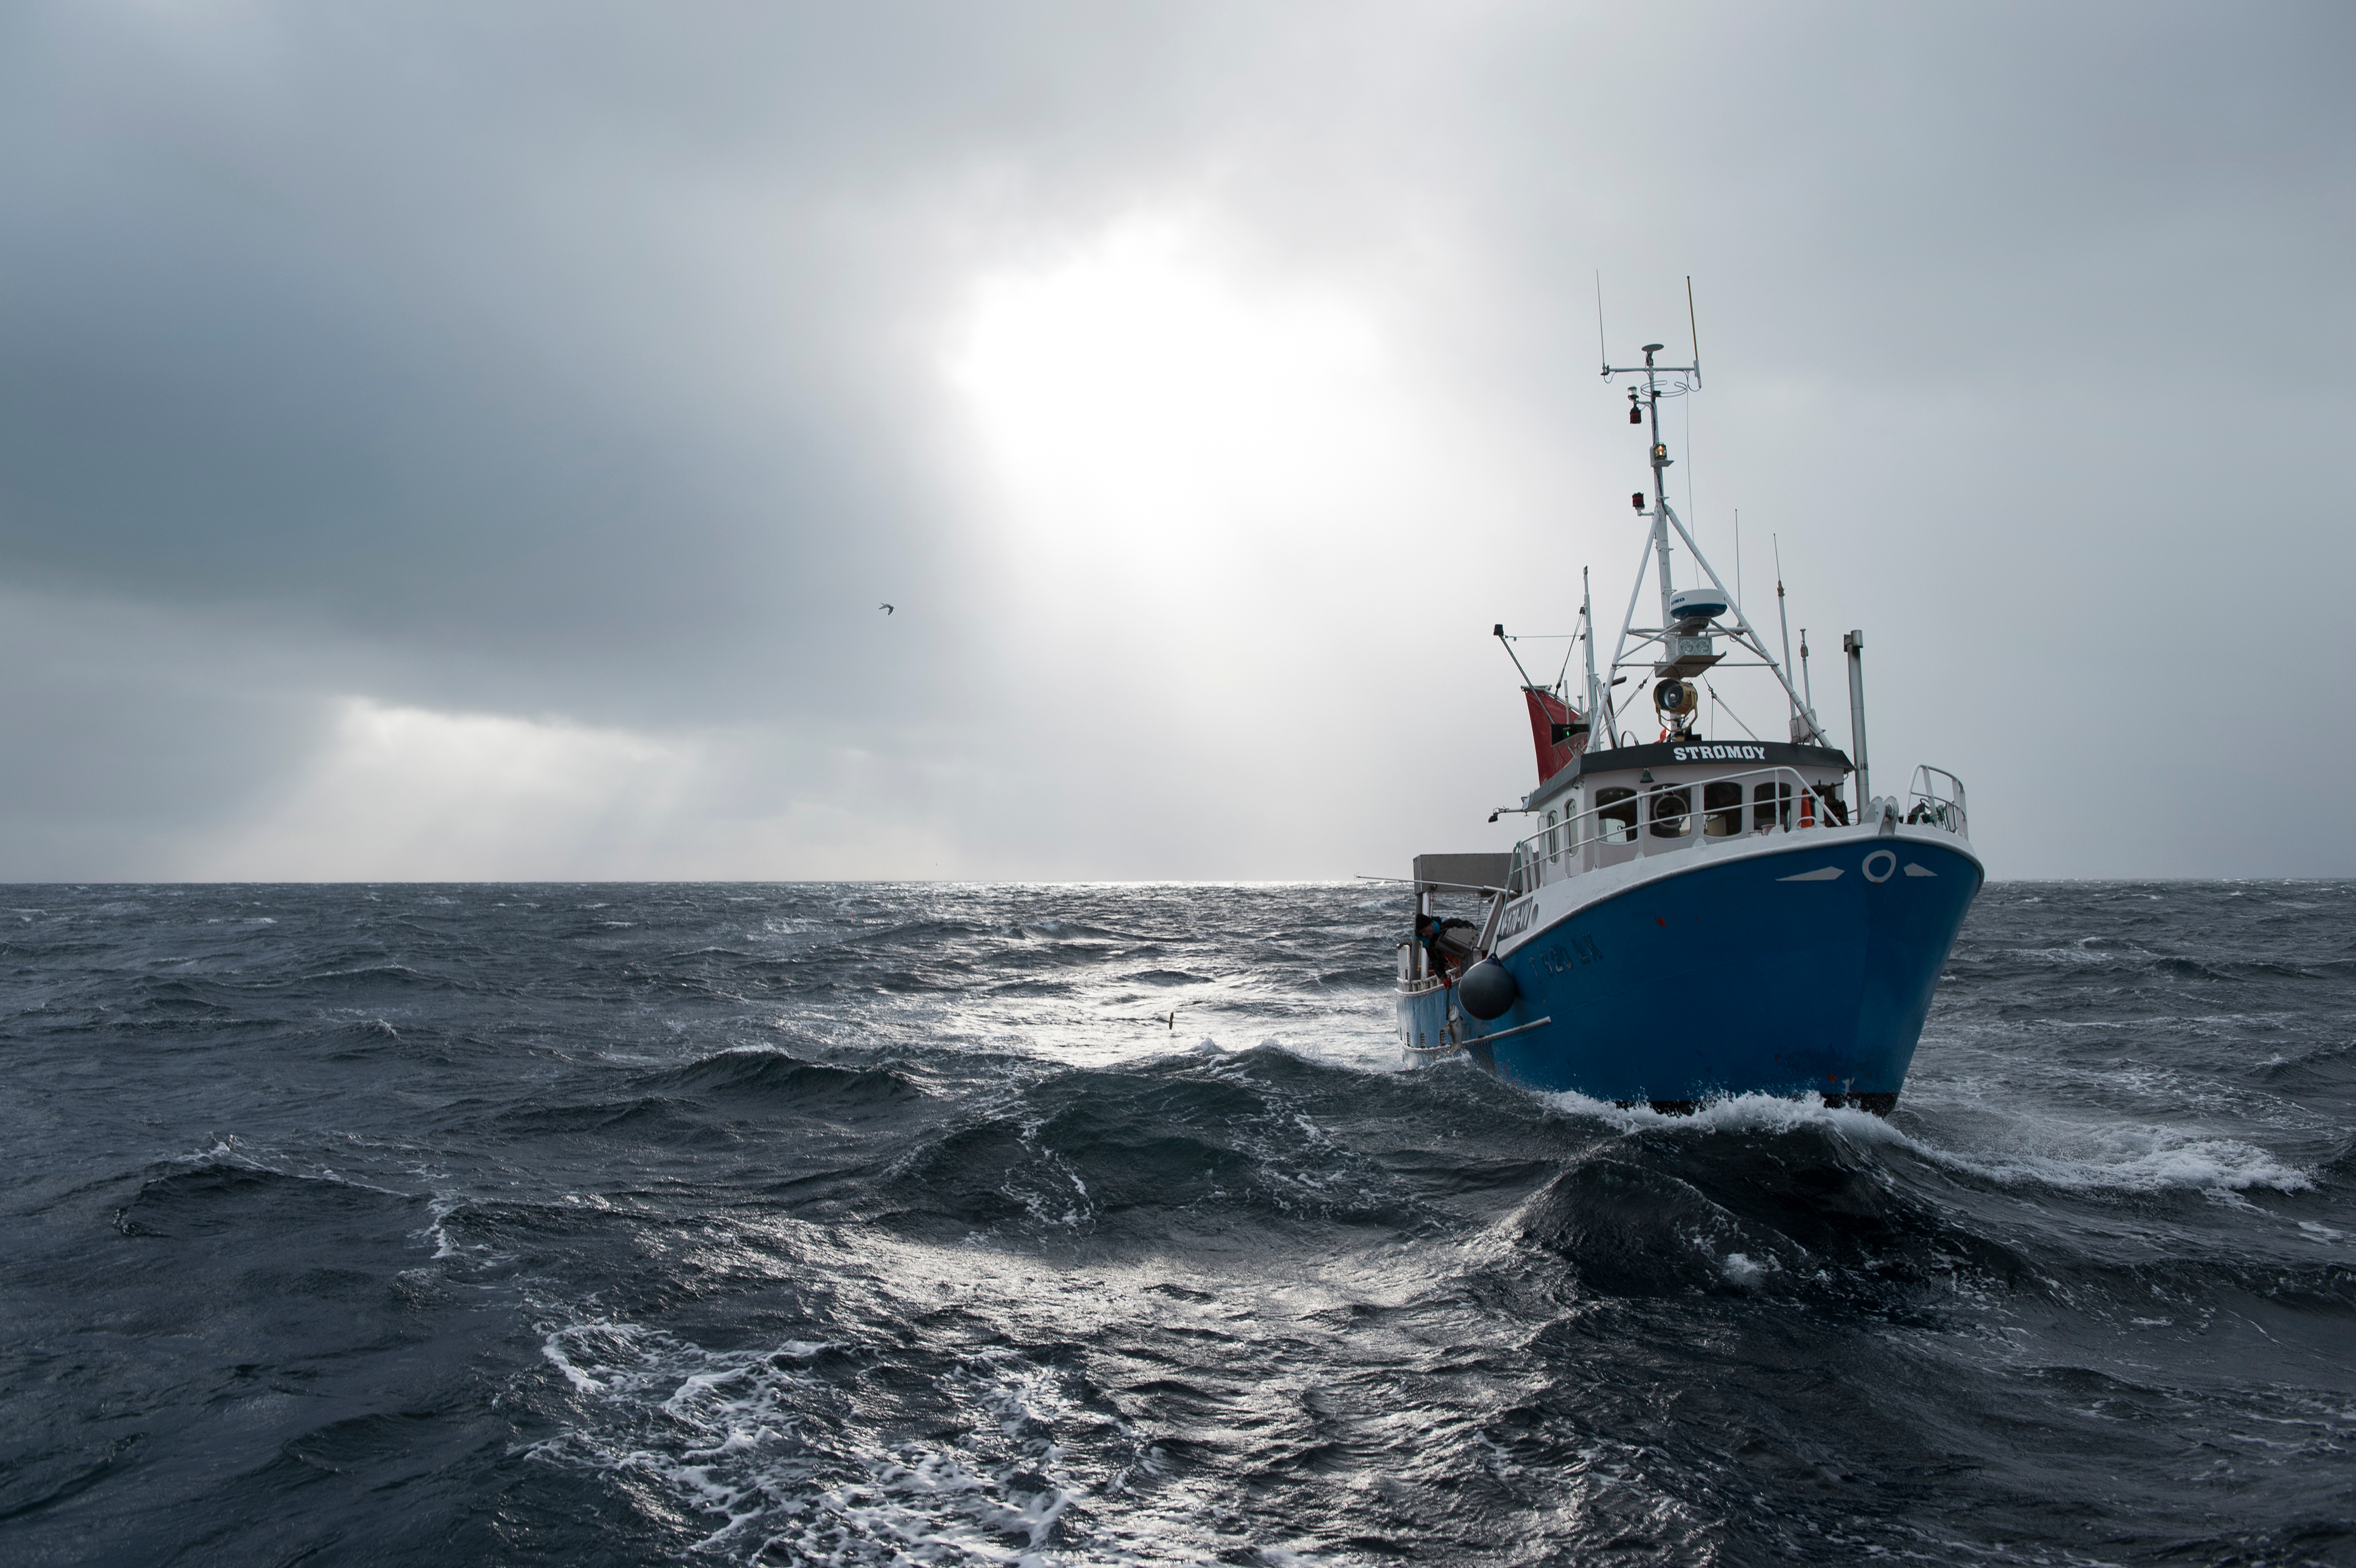 La Embajada de Noruega en México y The Norwegian Seafood Council promueven por segundo año consecutivo el auténtico bacalao noruego, como parte de múltiples recetas, además de la tradicional a la vizcaína

